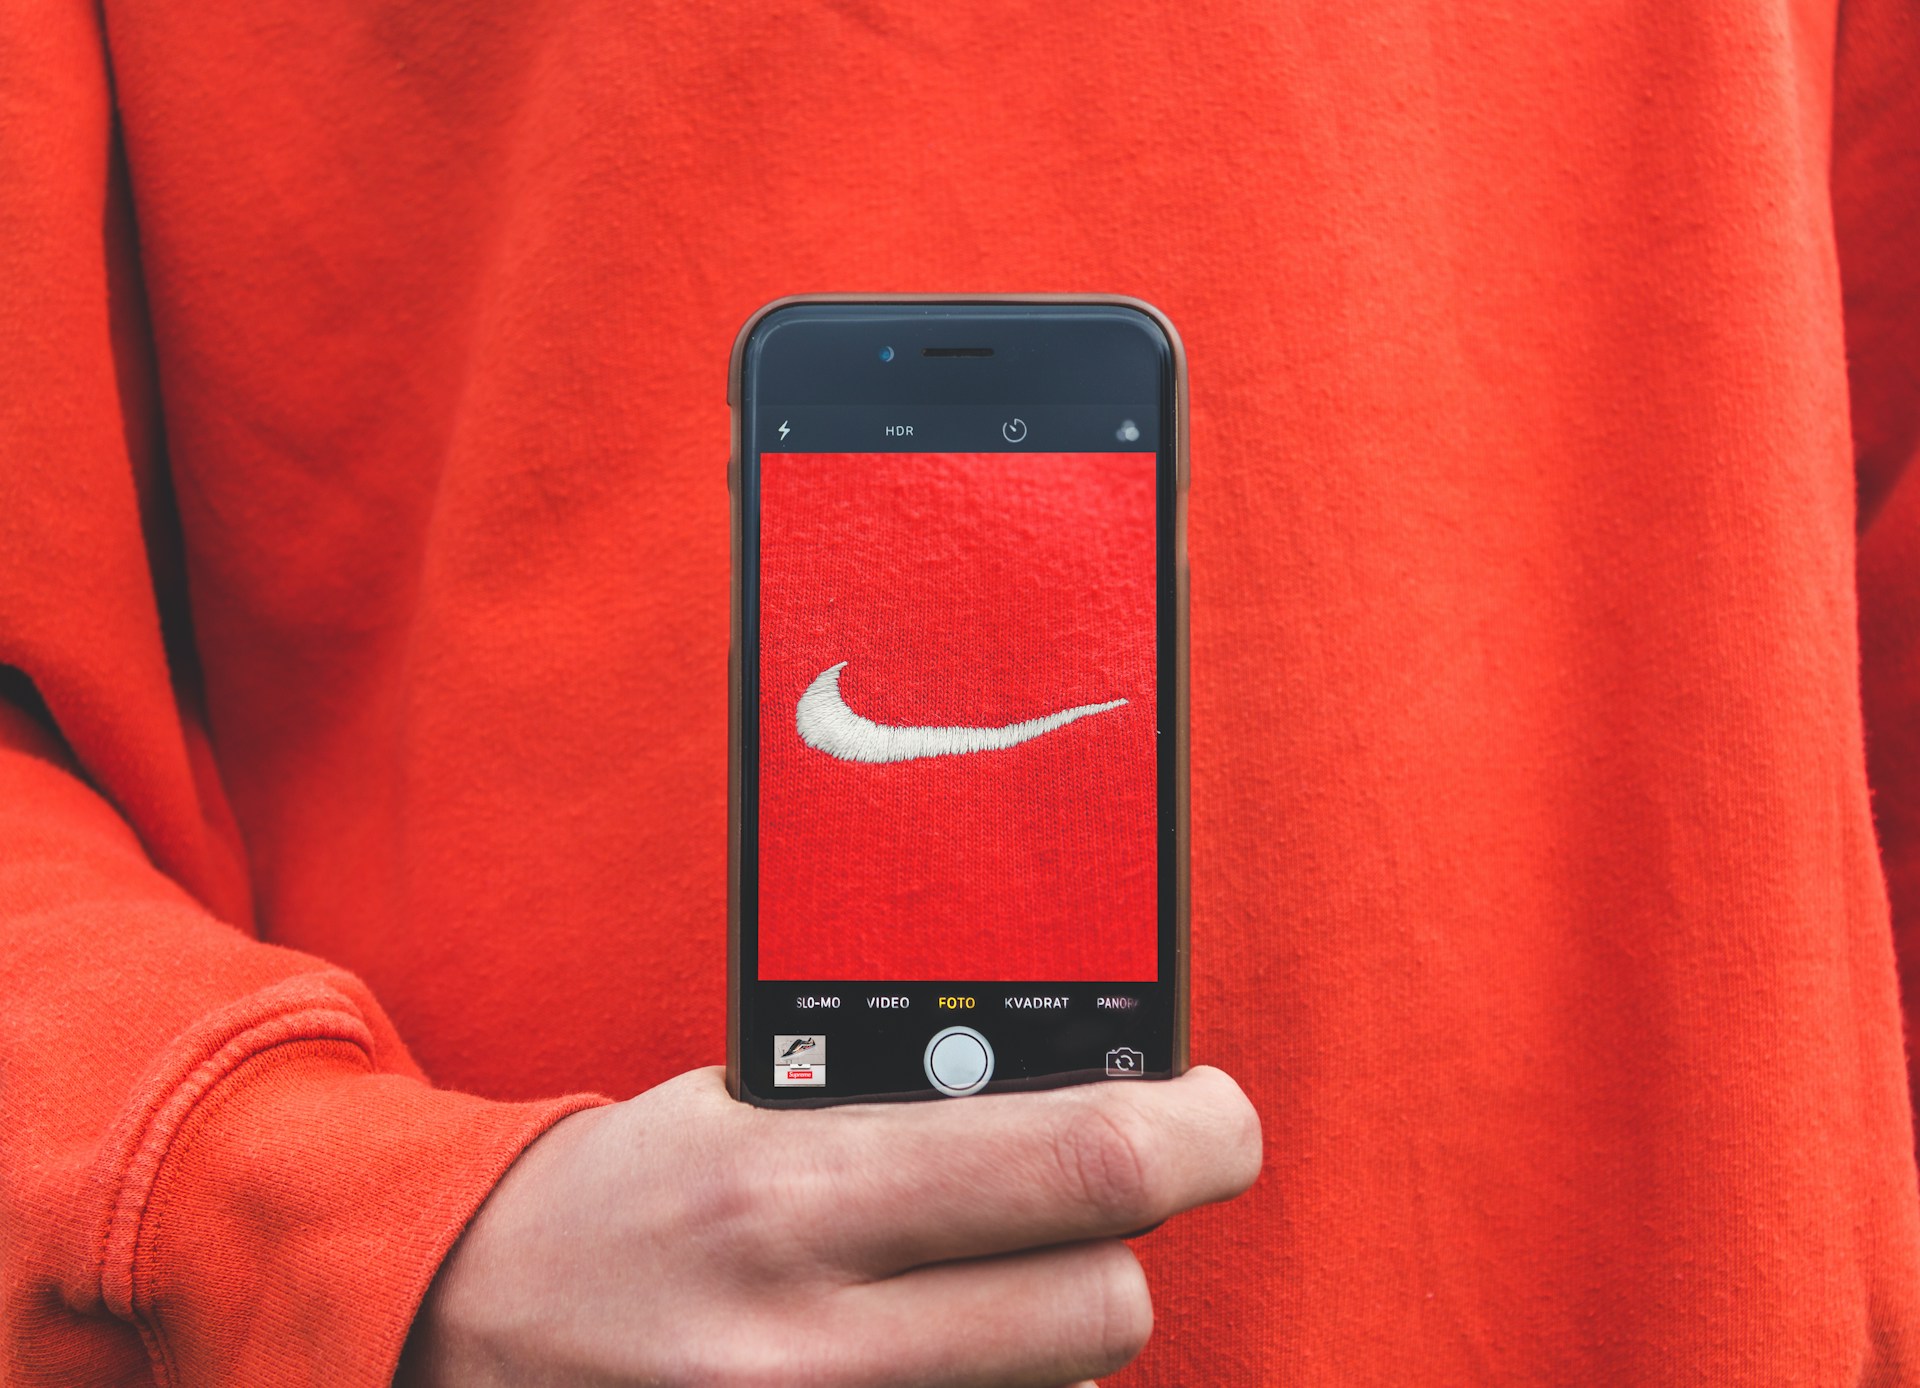 Un telefono fotografa una felpa rossa con il logo Nike indossata. Il logo bianco su sfondo rosso trasmette un'atmosfera sportiva e di stile, evidenziando l'iconicità del marchio Nike.